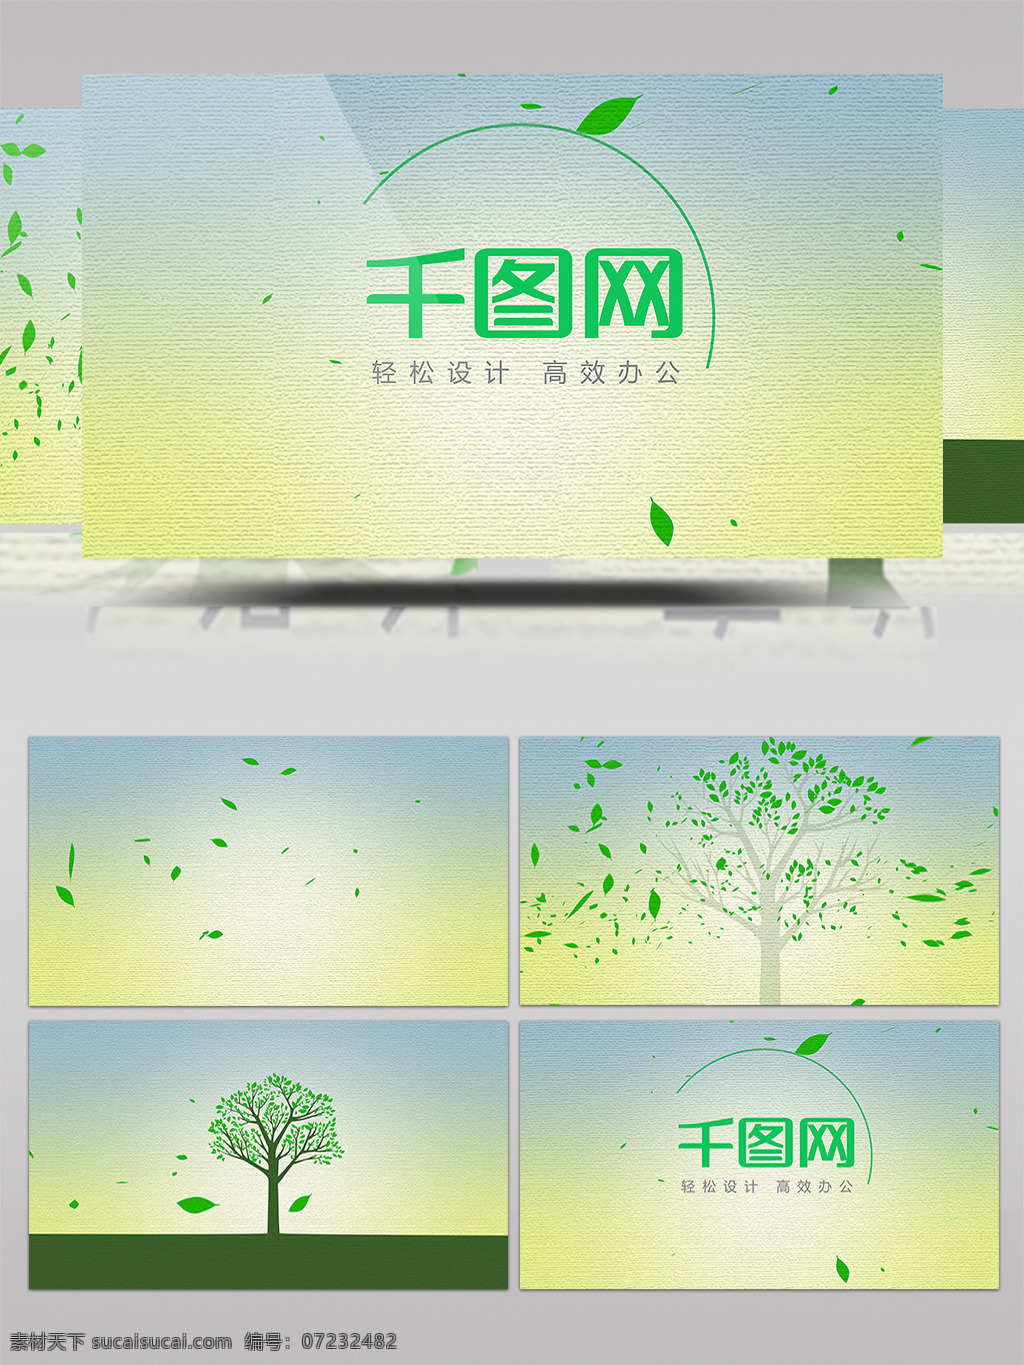 绿色环保 大树 生长 logo 演绎 ae 模板 绿色 环保 片头 树叶 汇聚